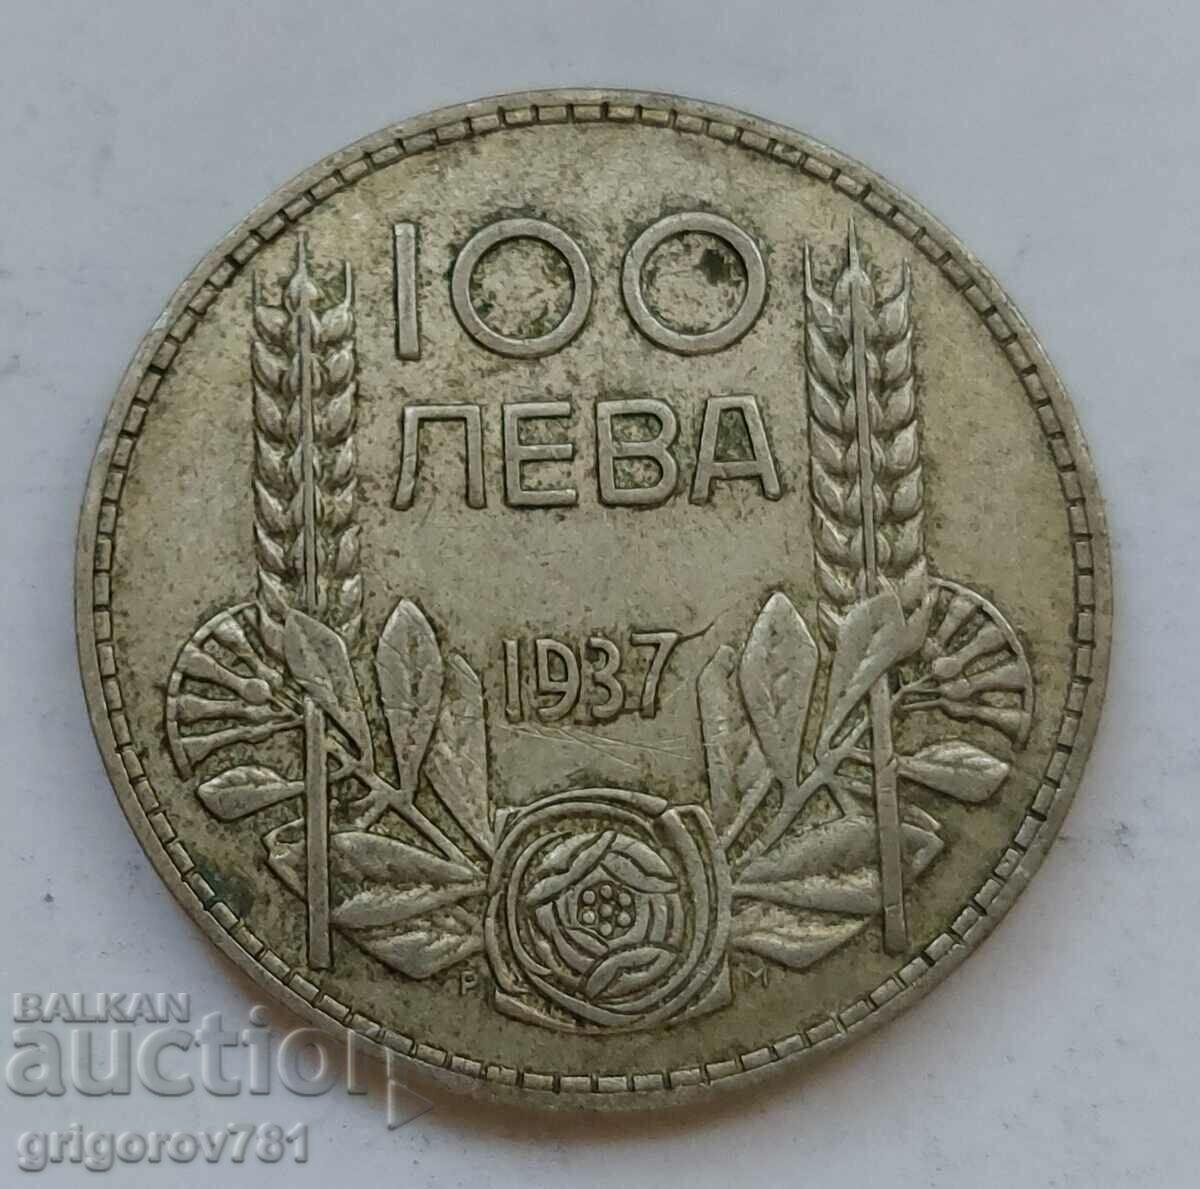 Ασήμι 100 λέβα Βουλγαρία 1937 - ασημένιο νόμισμα #137